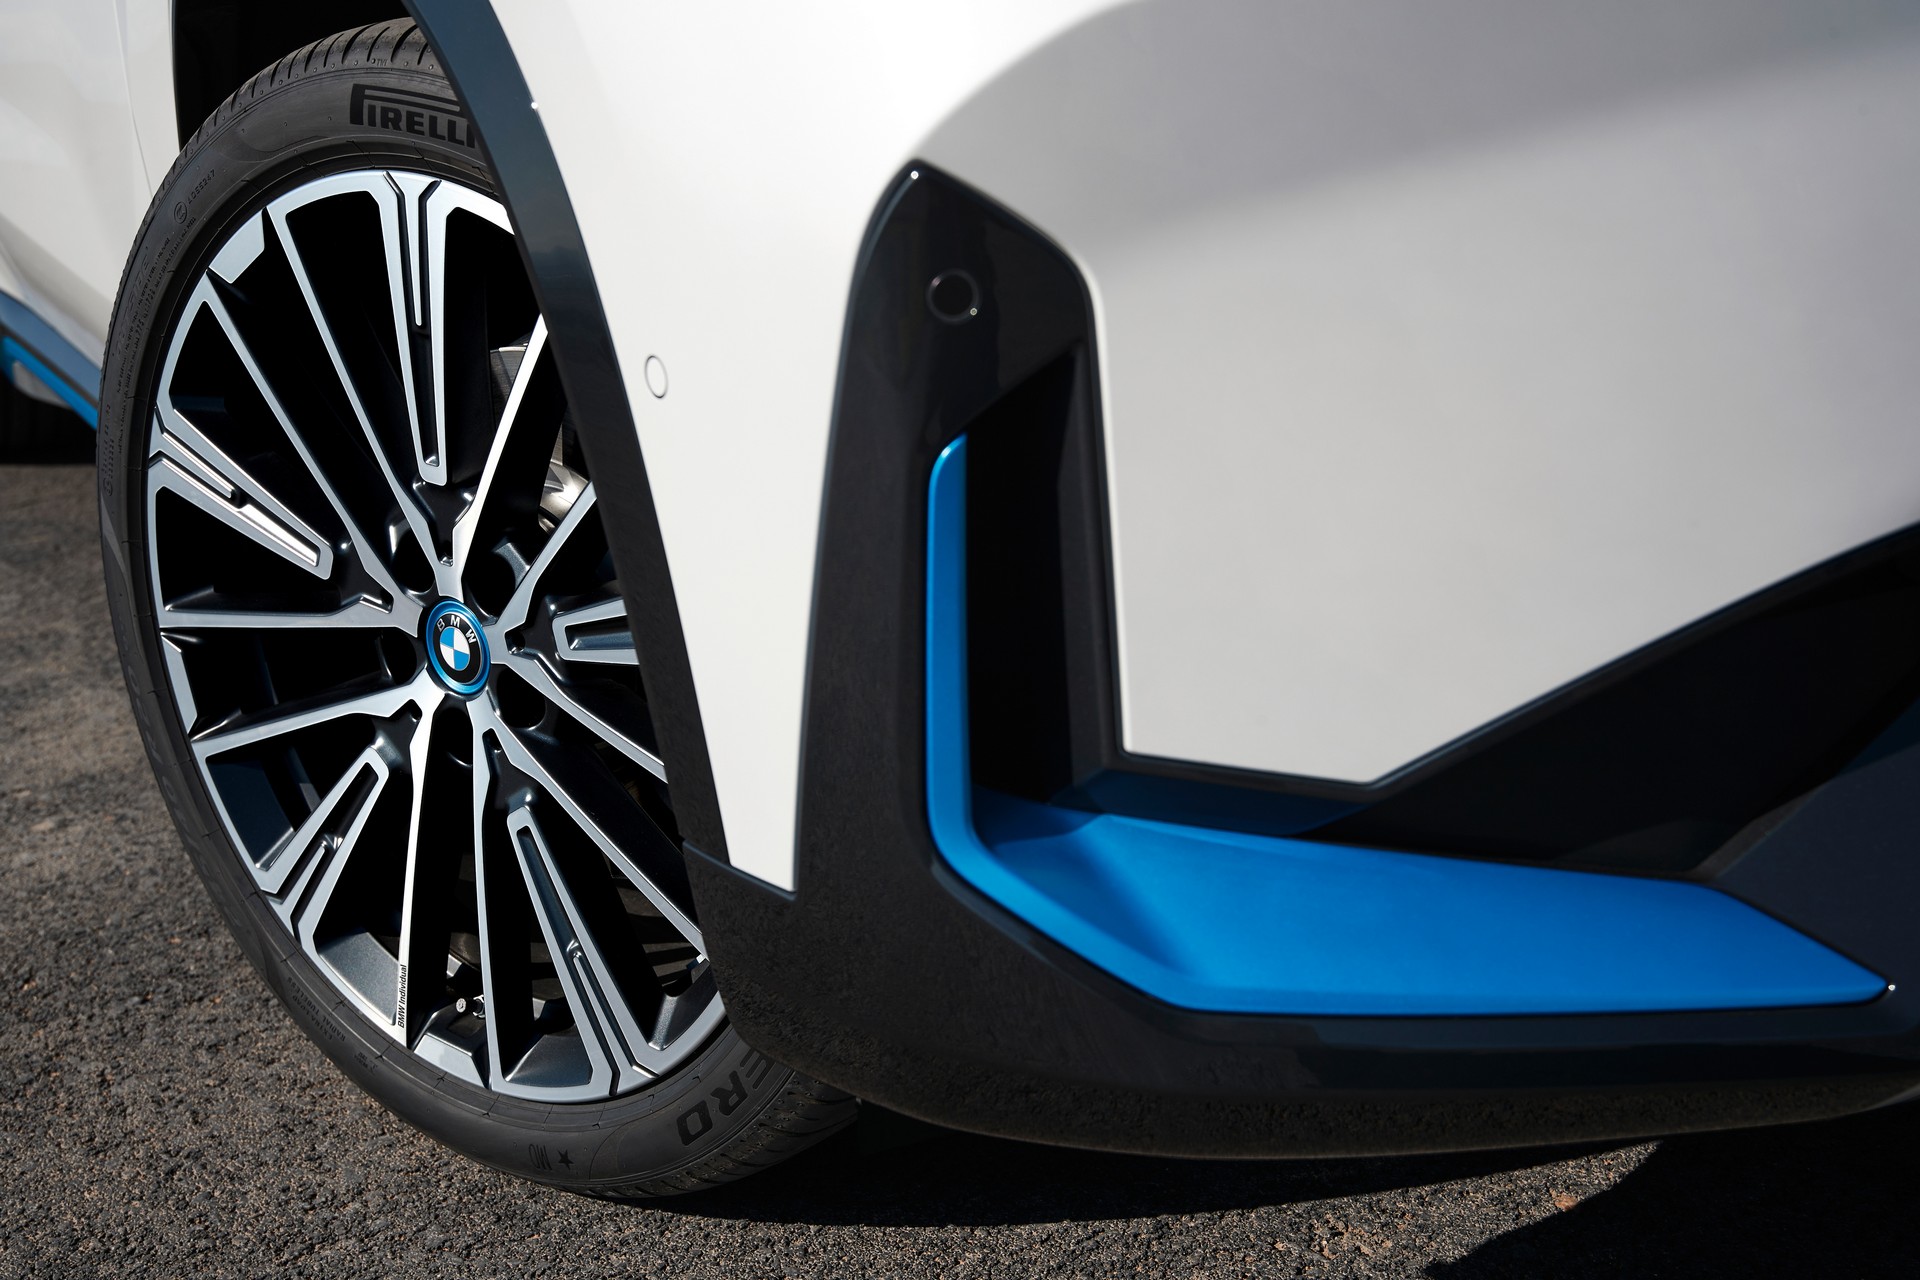 BMW iX1 elektrikli SUV tanıtıldı: İşte tasarımı ve özellikleri